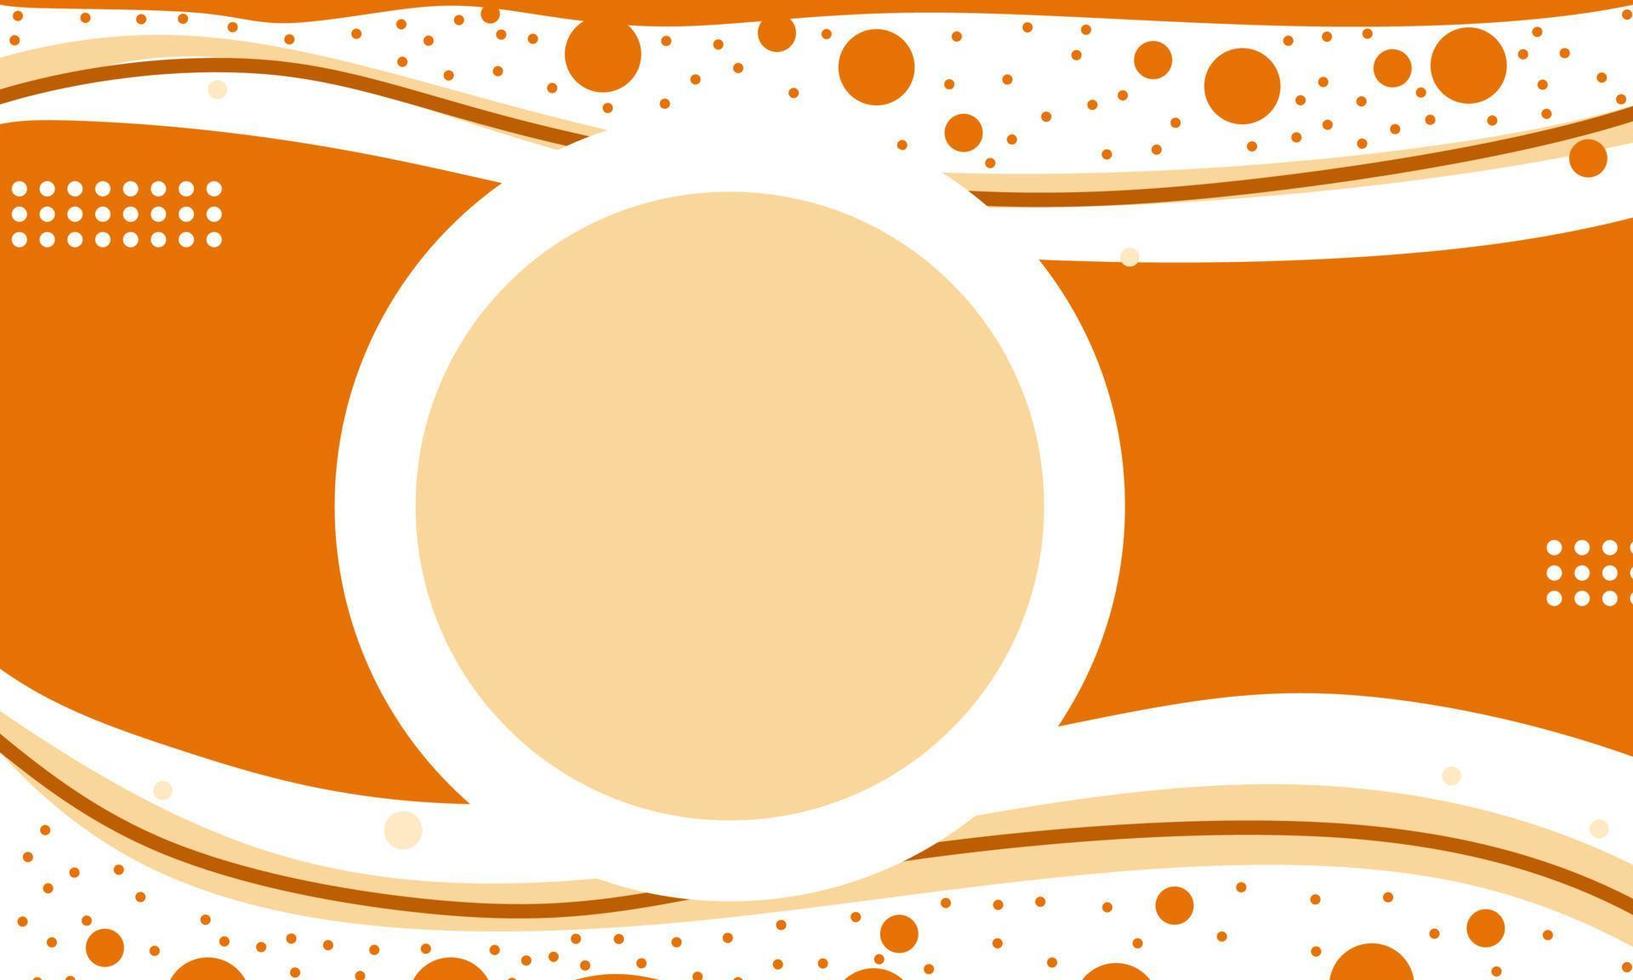 papel de parede ou cor laranja abstrata de fundo em design plano vetor